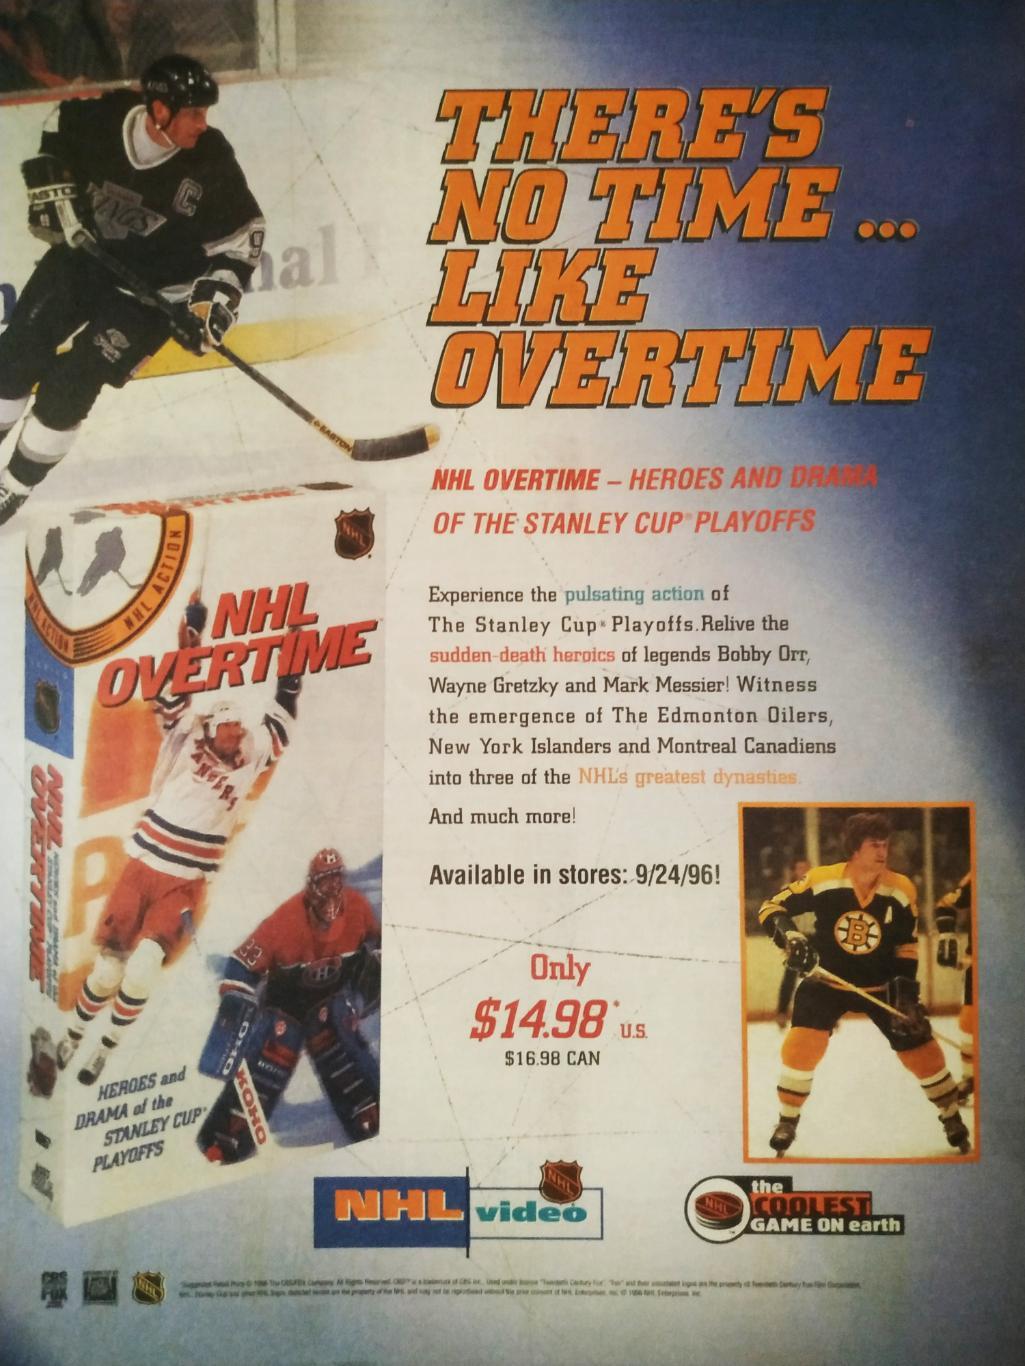 ХОККЕЙ ЖУРНАЛ ЕЖЕНЕДЕЛЬНИК НХЛ НОВОСТИ ХОККЕЯ NHL NOV.1 1996 THE HOCKEY NEWS 7